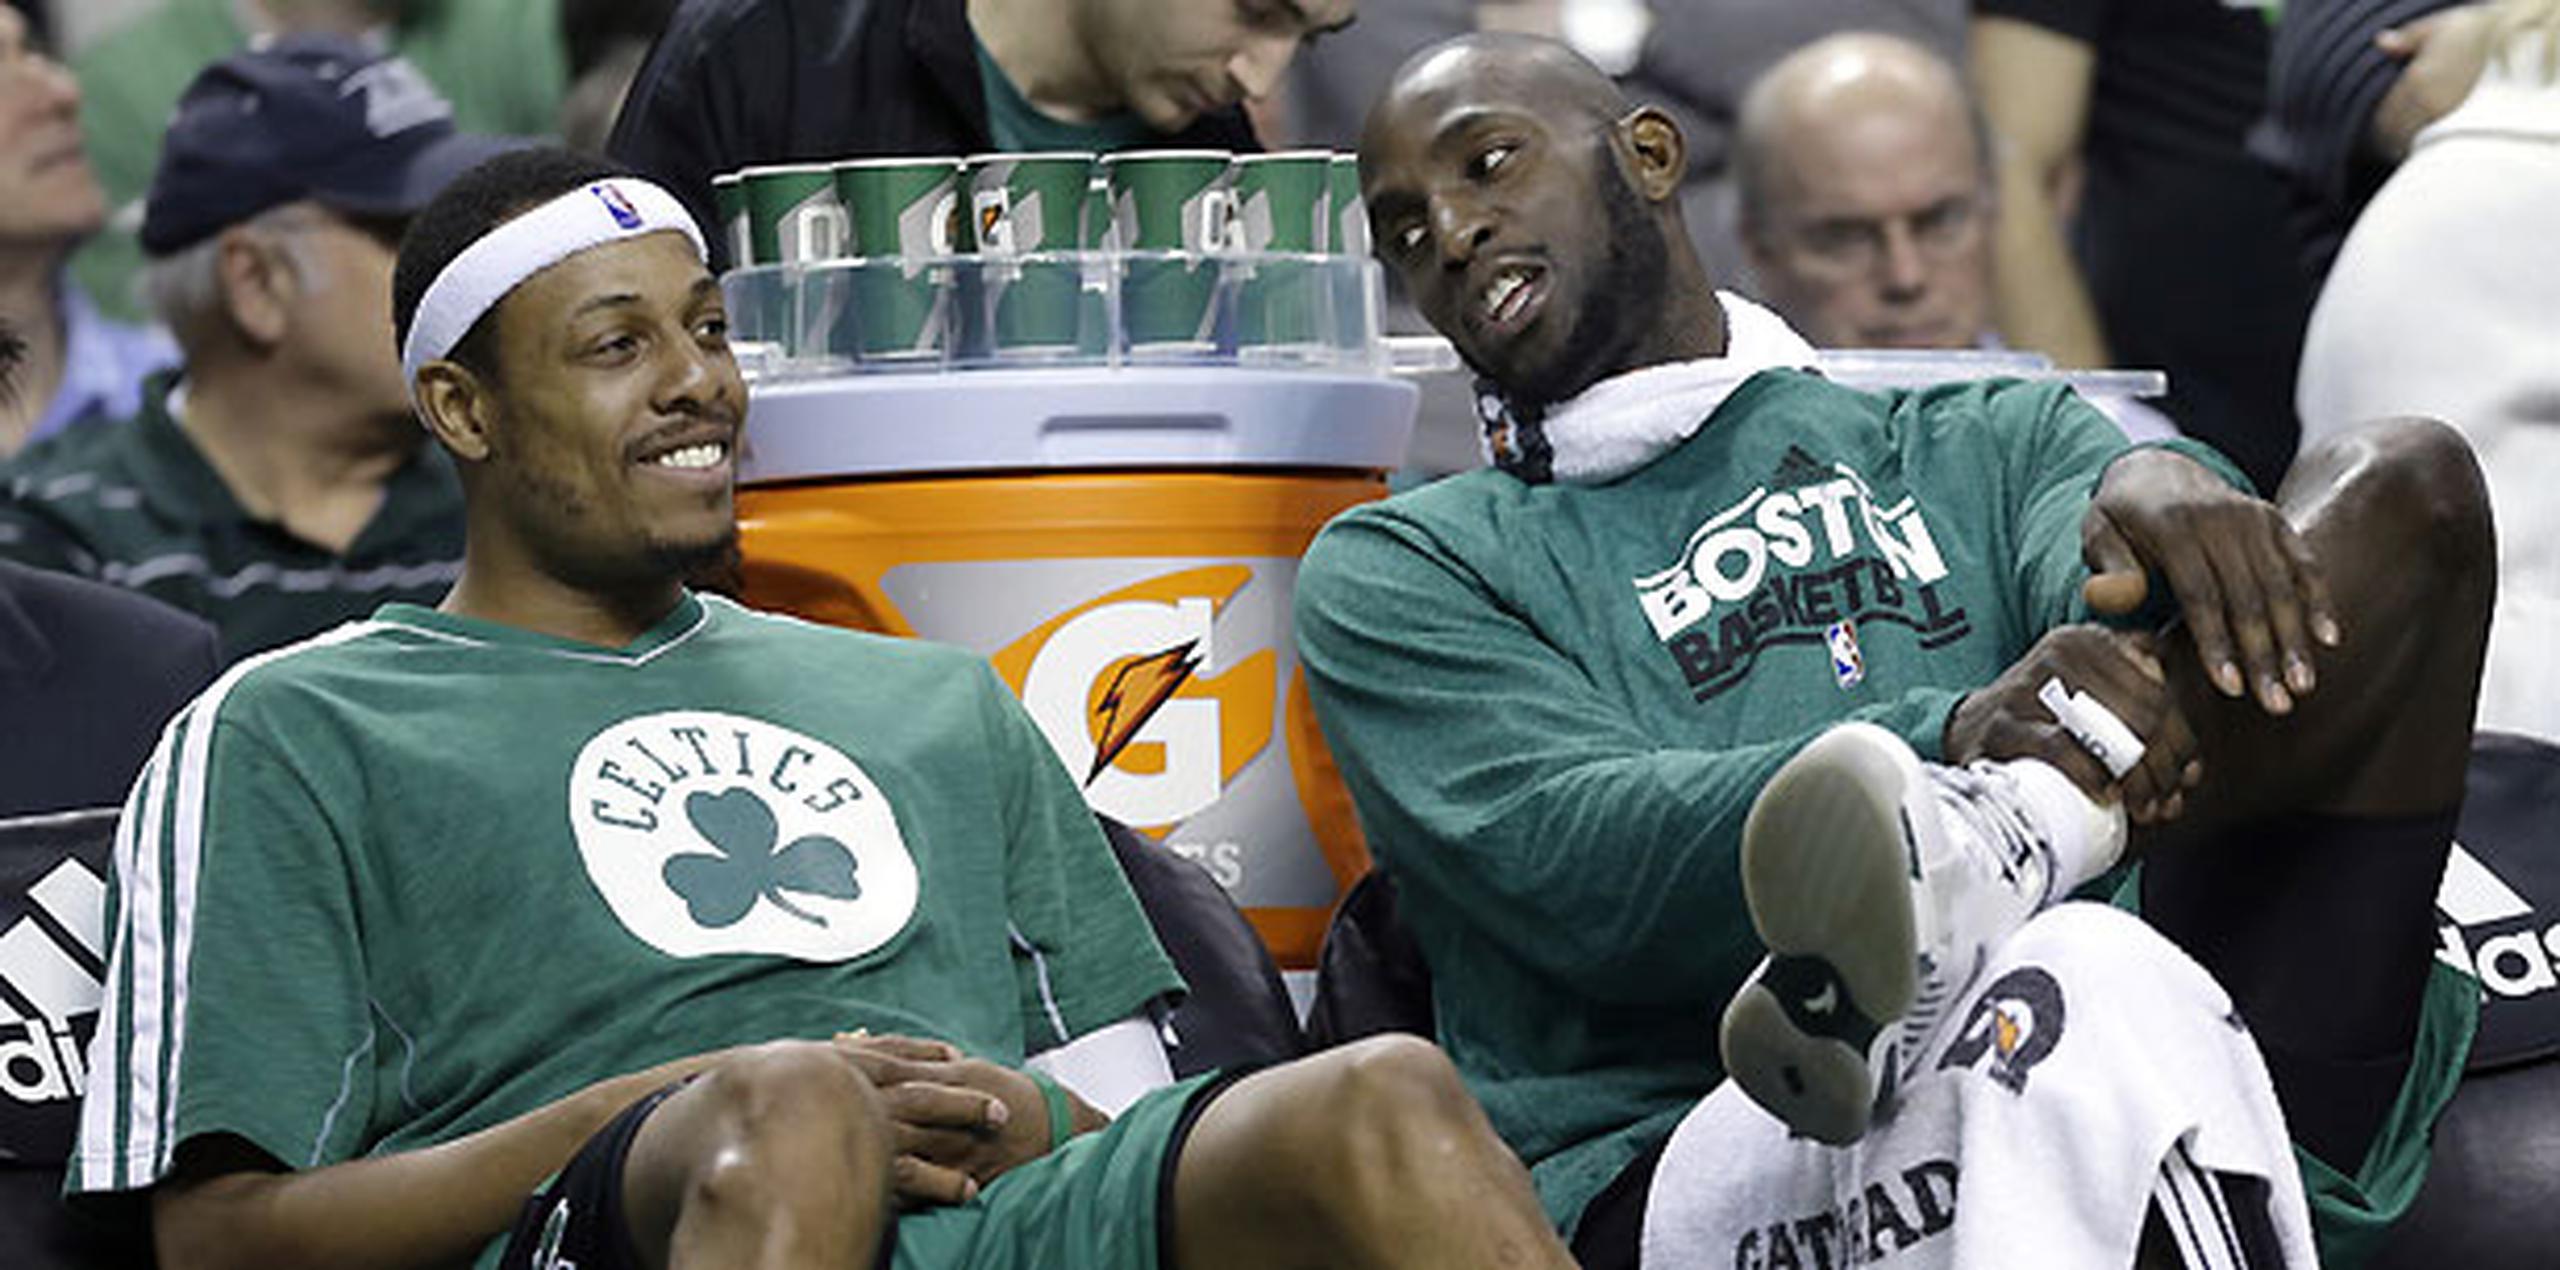 Los Brooklyn Nets se reforzarán con Paul Pierce y Kevin Garnett en el marco de un sensacional canje con los Boston Celtics, según un informante al tanto de las negociaciones. (AP / Elise Amendola)